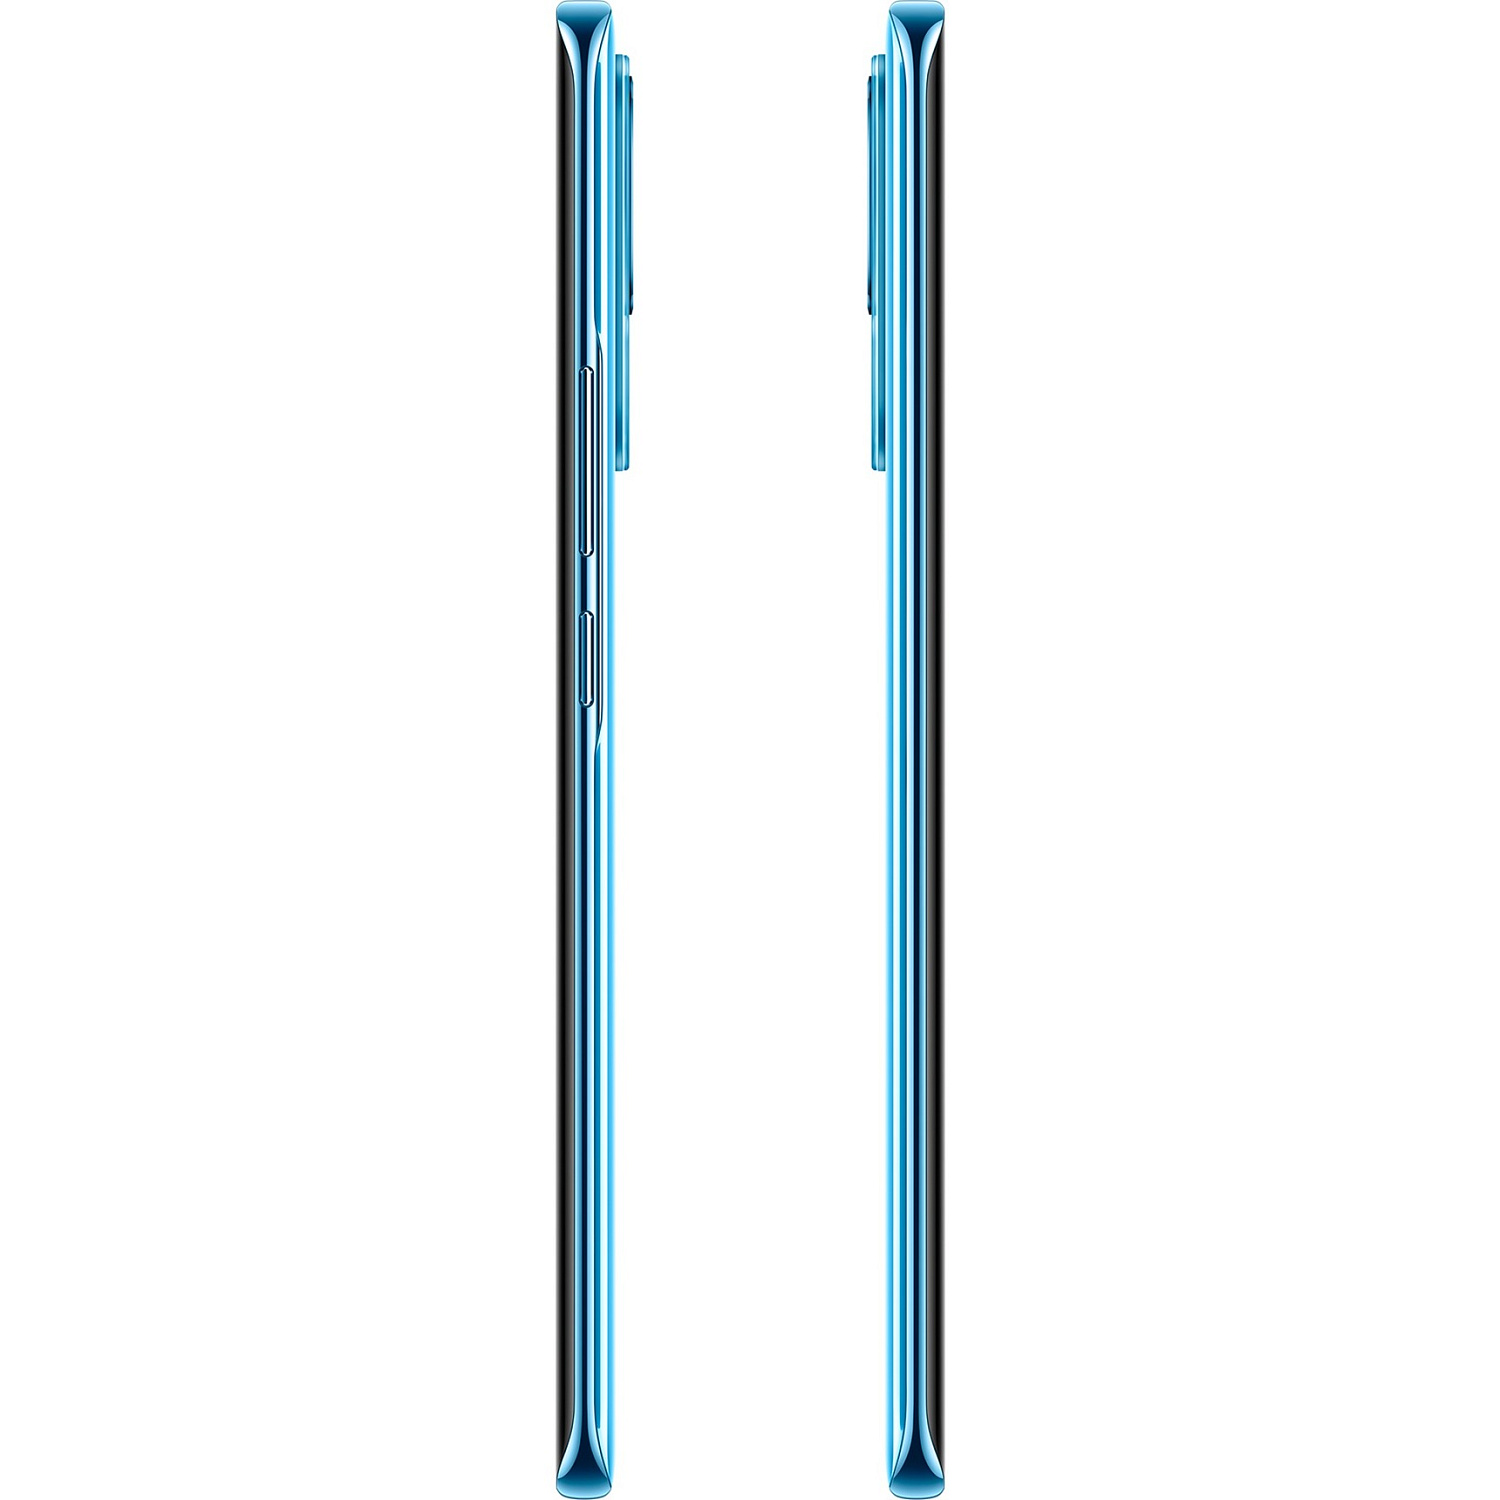 Xiaomi 13 Lite 8/128GB Lite Blue EU - ITMag